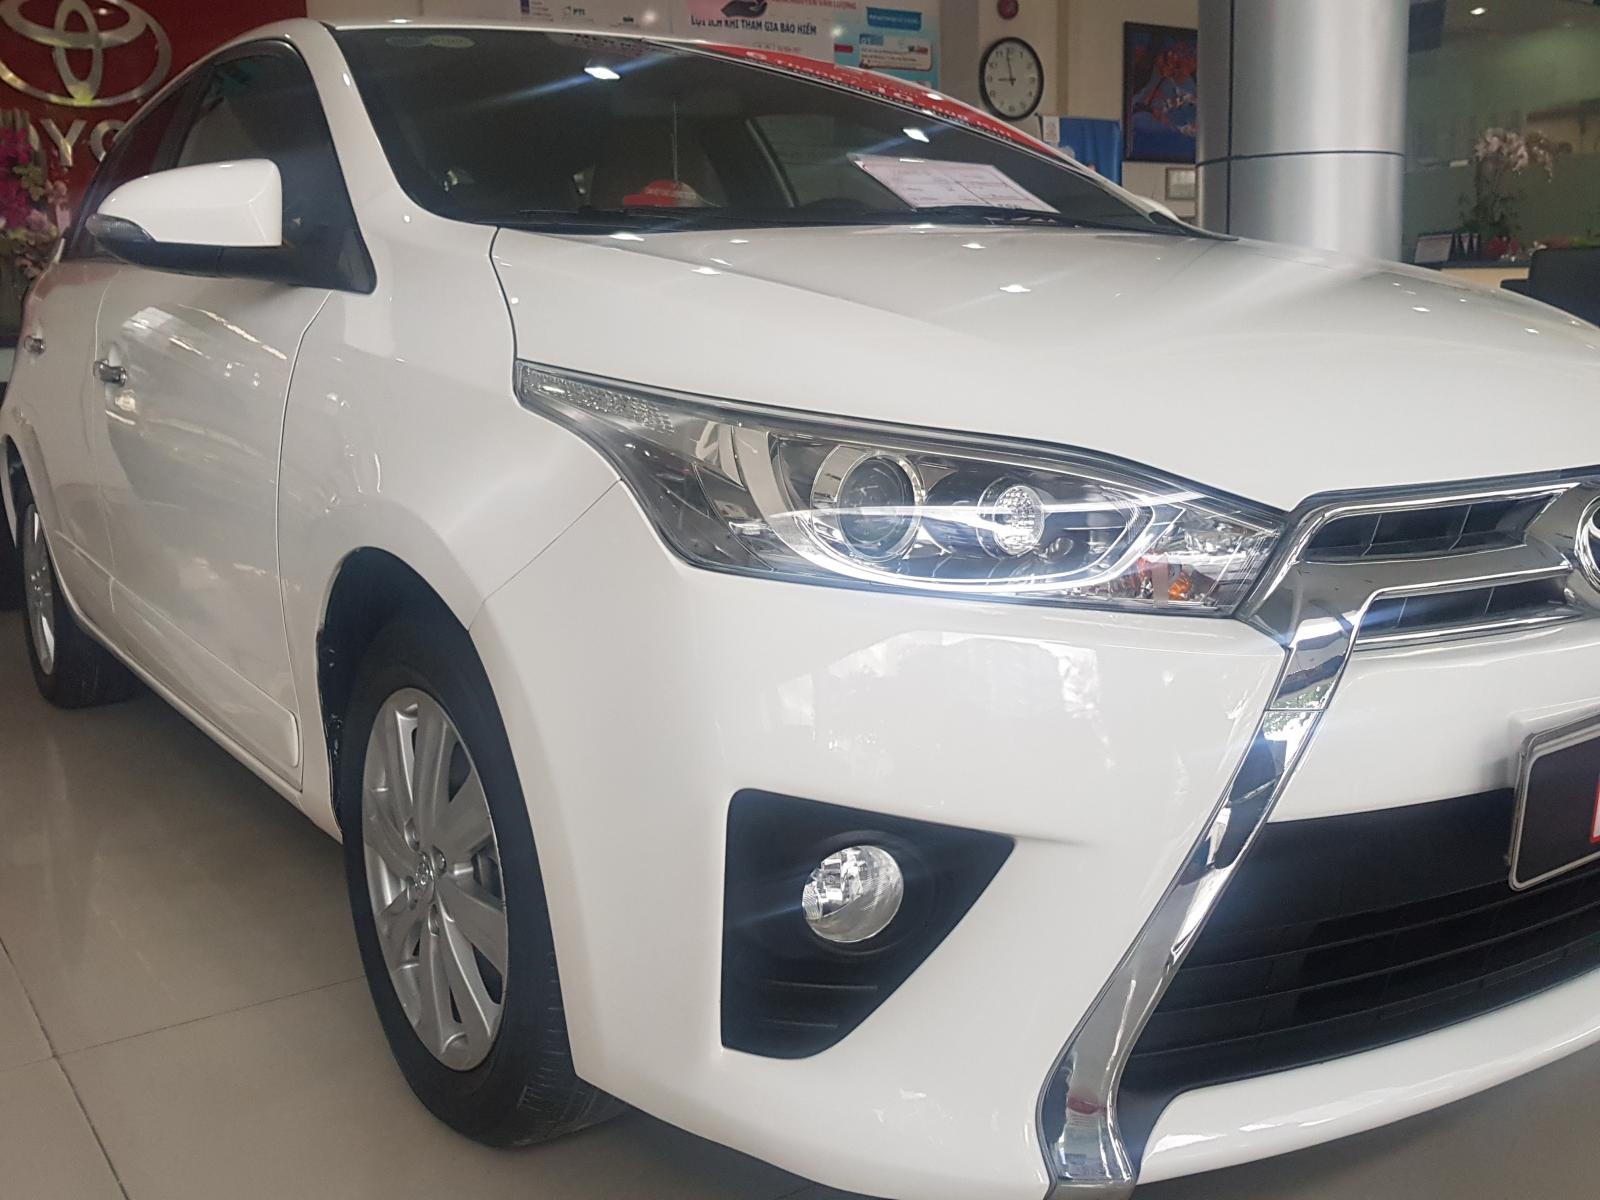 Toyota Yaris 1.3G 2015 - Bán Yaris 1.3G, màu trắng, 2015, 580tr, (còn thương lượng) liên hệ Trung 0789 212 979 để được giảm giá mạnh ạ